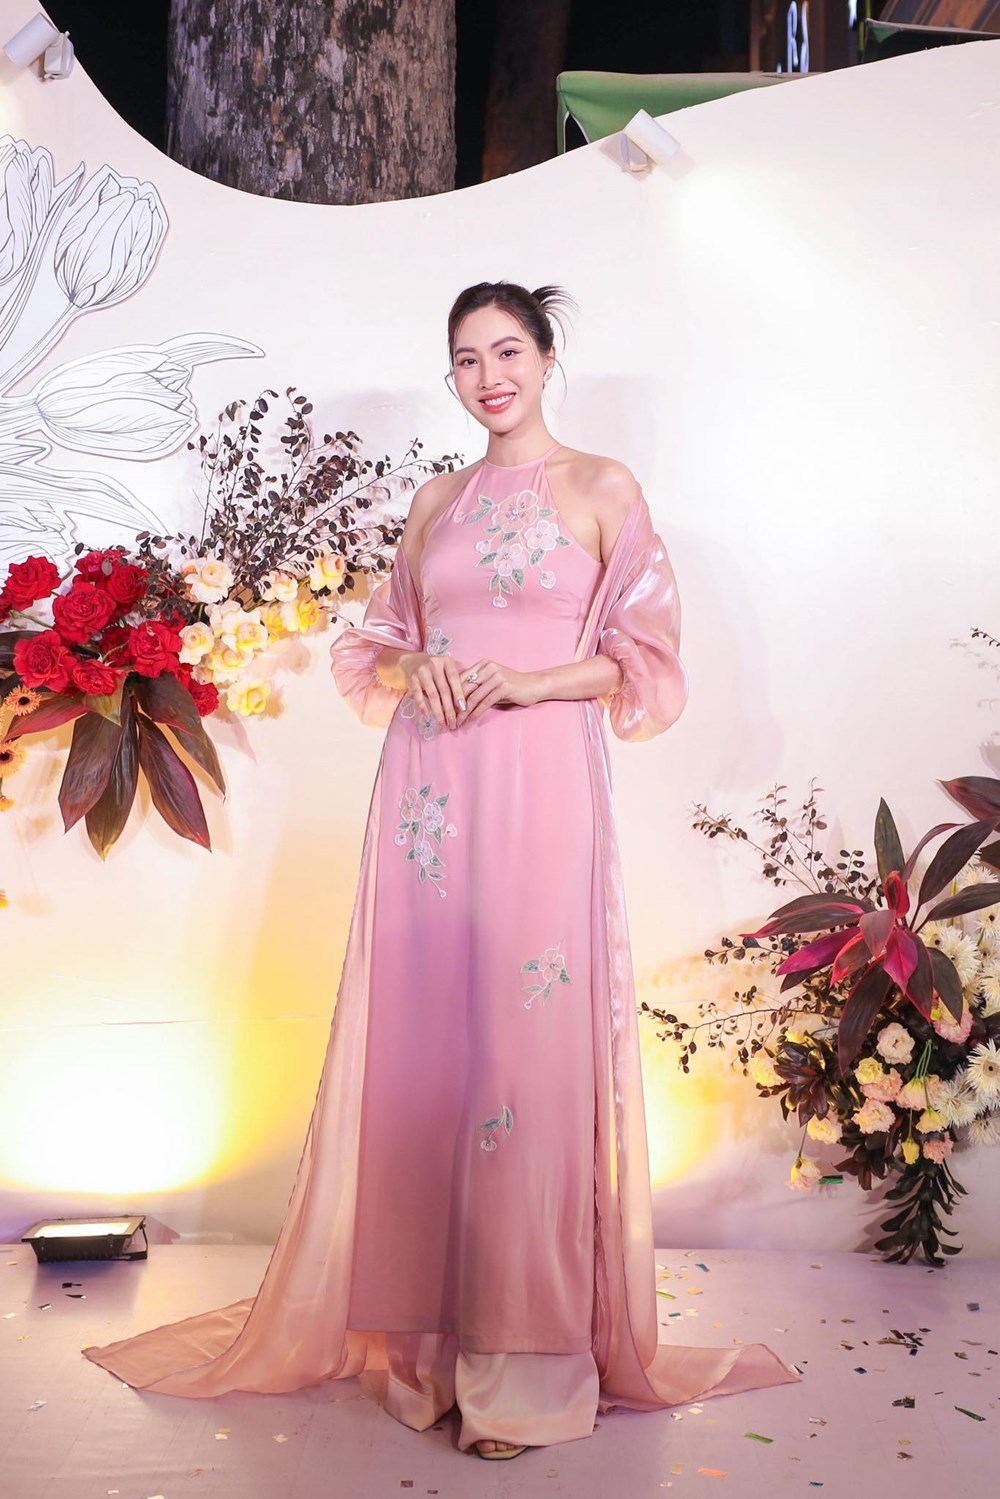 Hoa hậu Hương Giang, MC Mai Ngọc cùng dàn sao duyên dáng trong áo dài  - ảnh 10